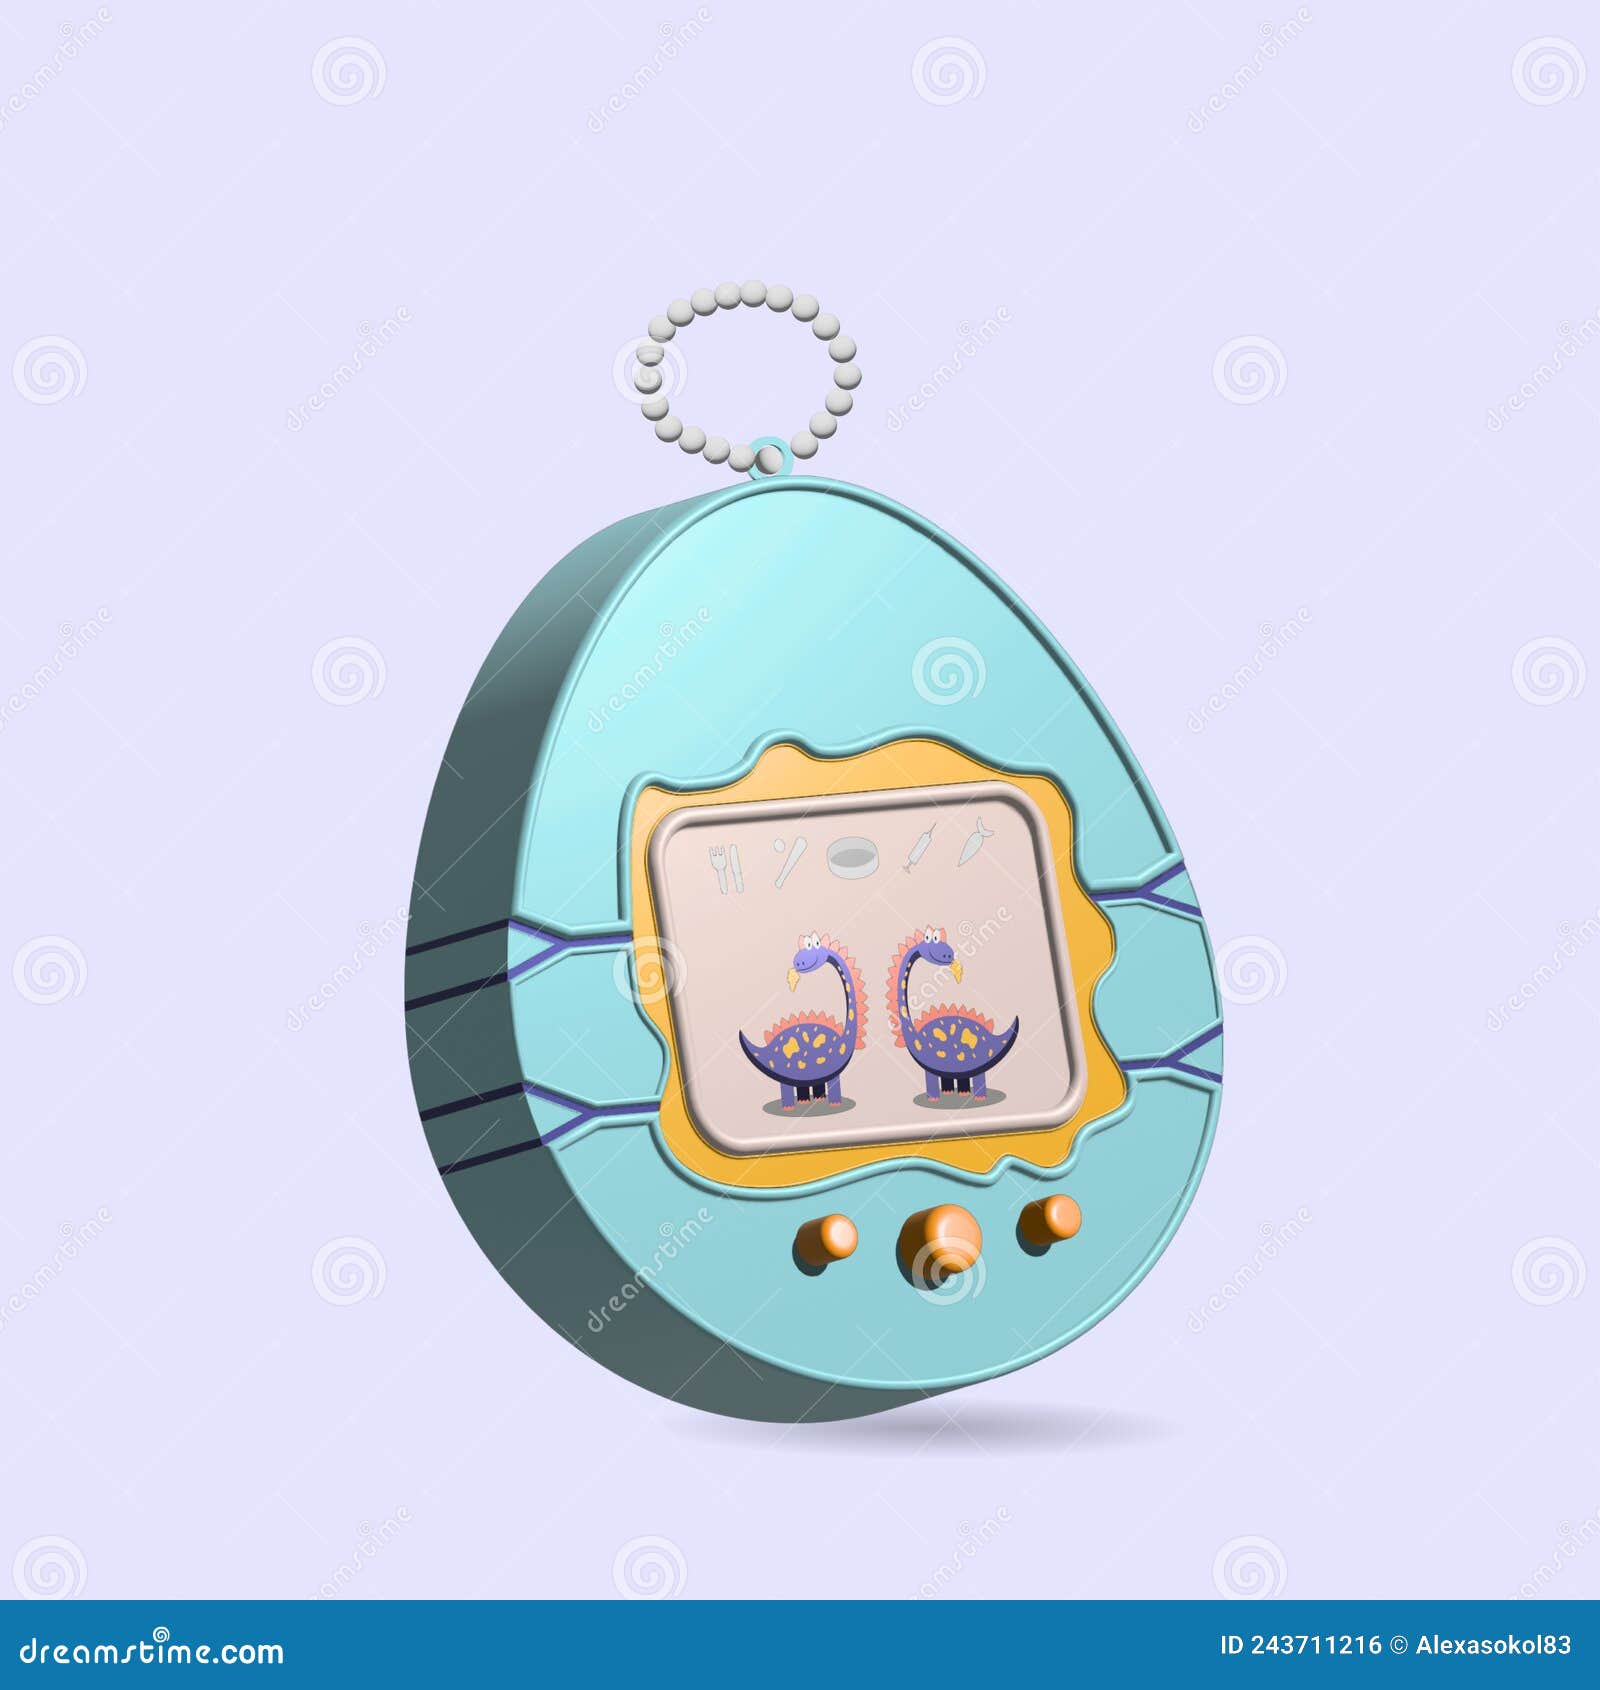 Tamagotchi Game, Pet Pocket Game, 3D Illustration Stock Vector -  Illustration of childhood, buttons: 243711216